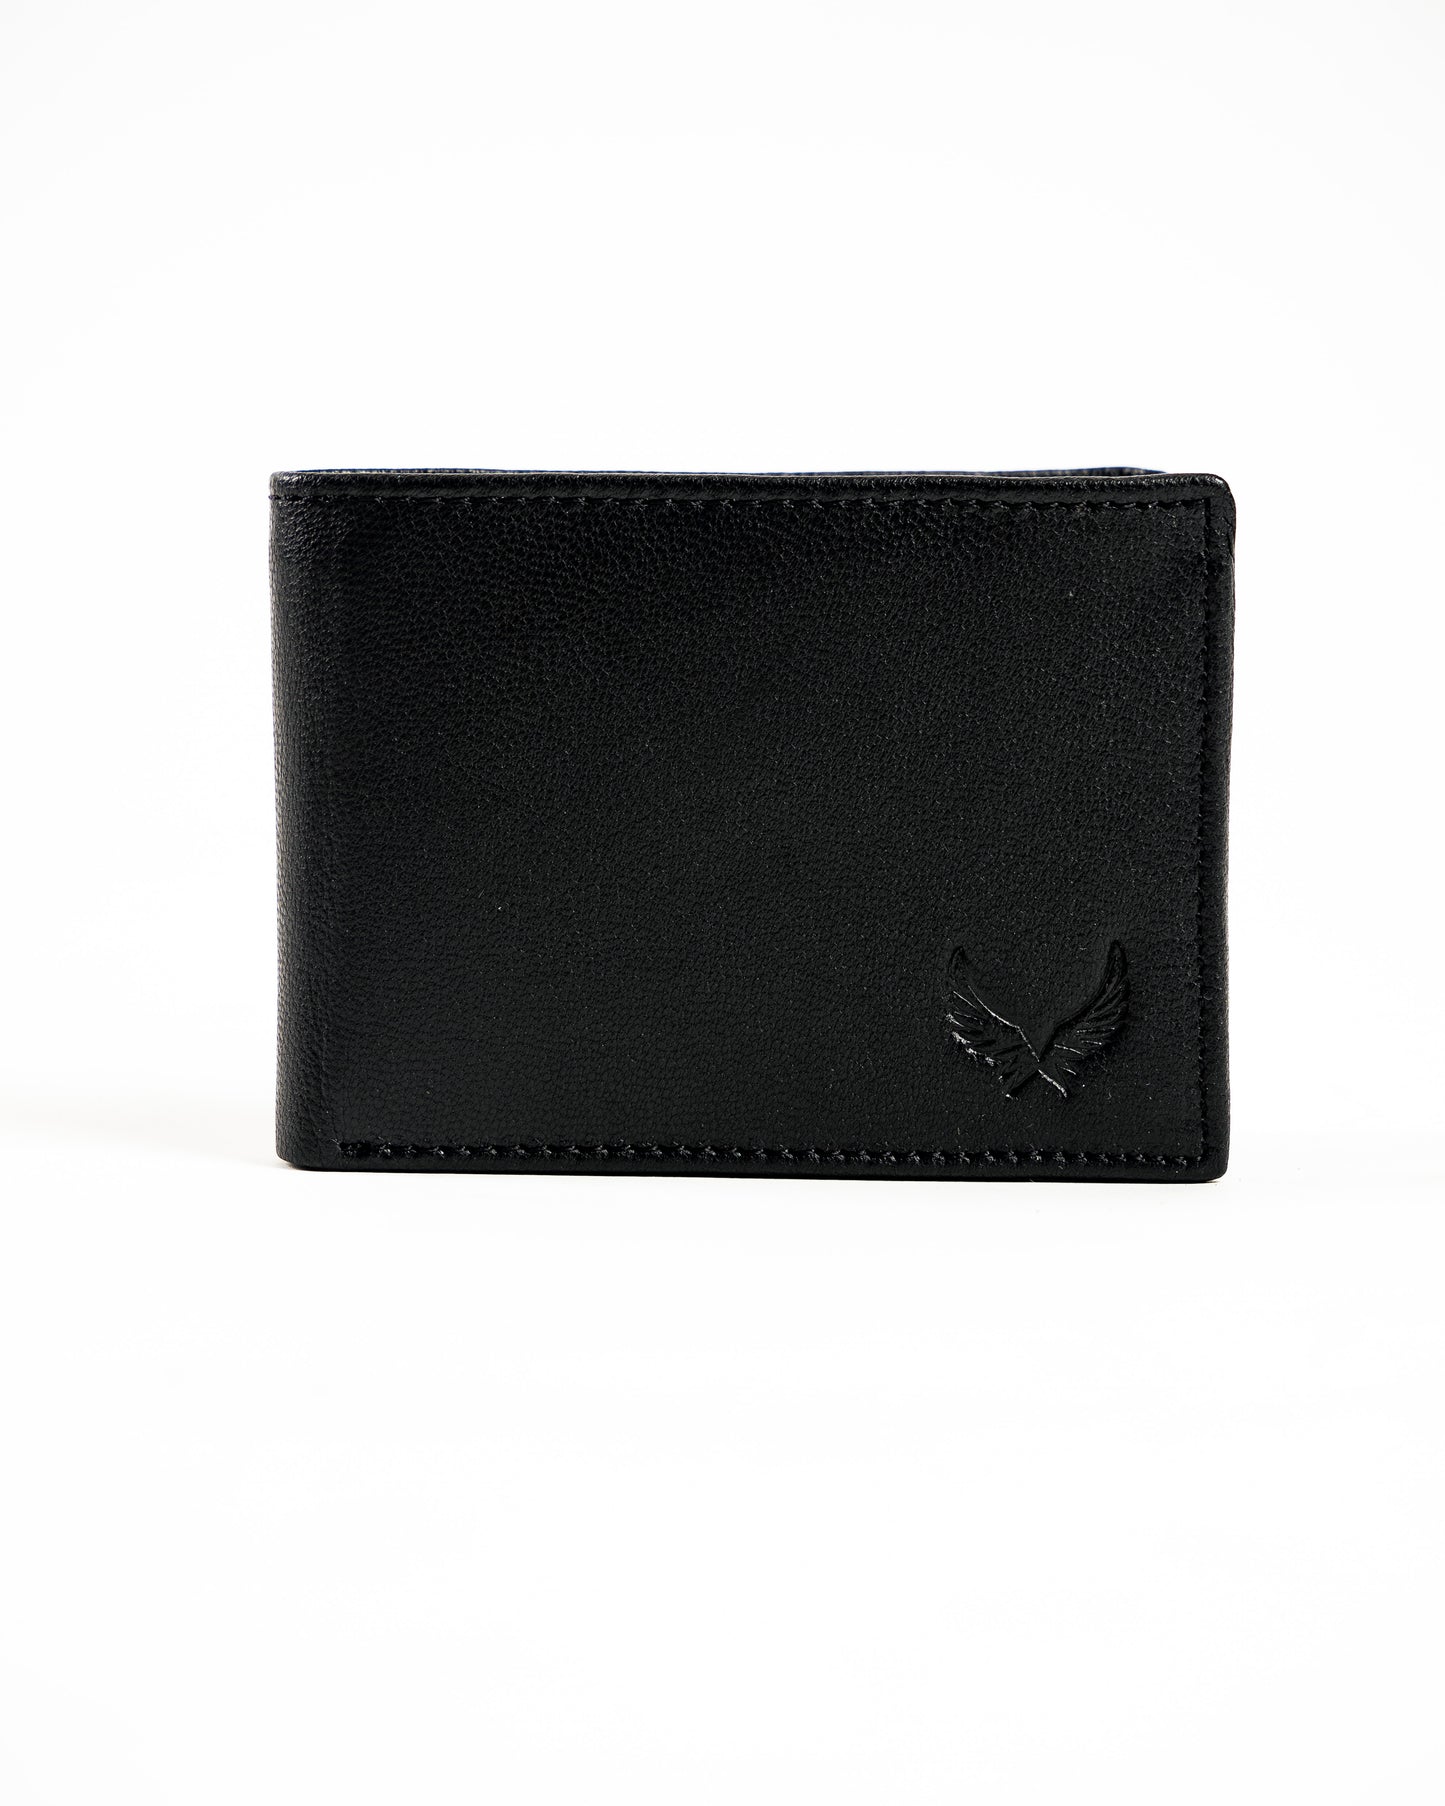 Wallet (AD01, WW)